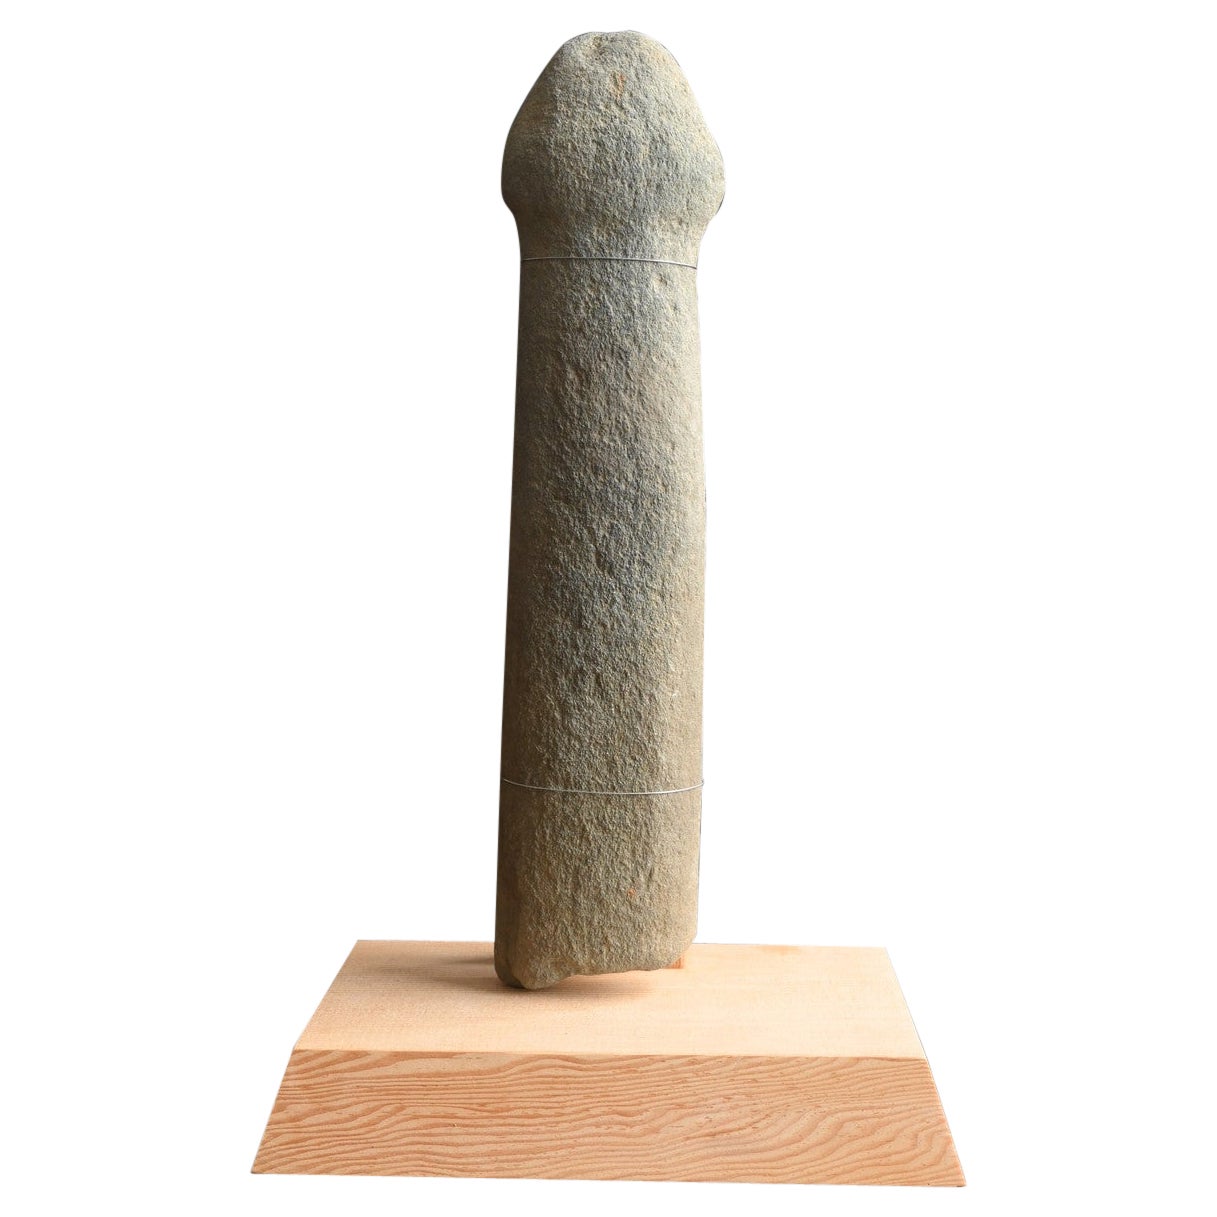 Japanisches antikes penisförmiges Steinornament/sehr alter Ausgrabungsgegenstand